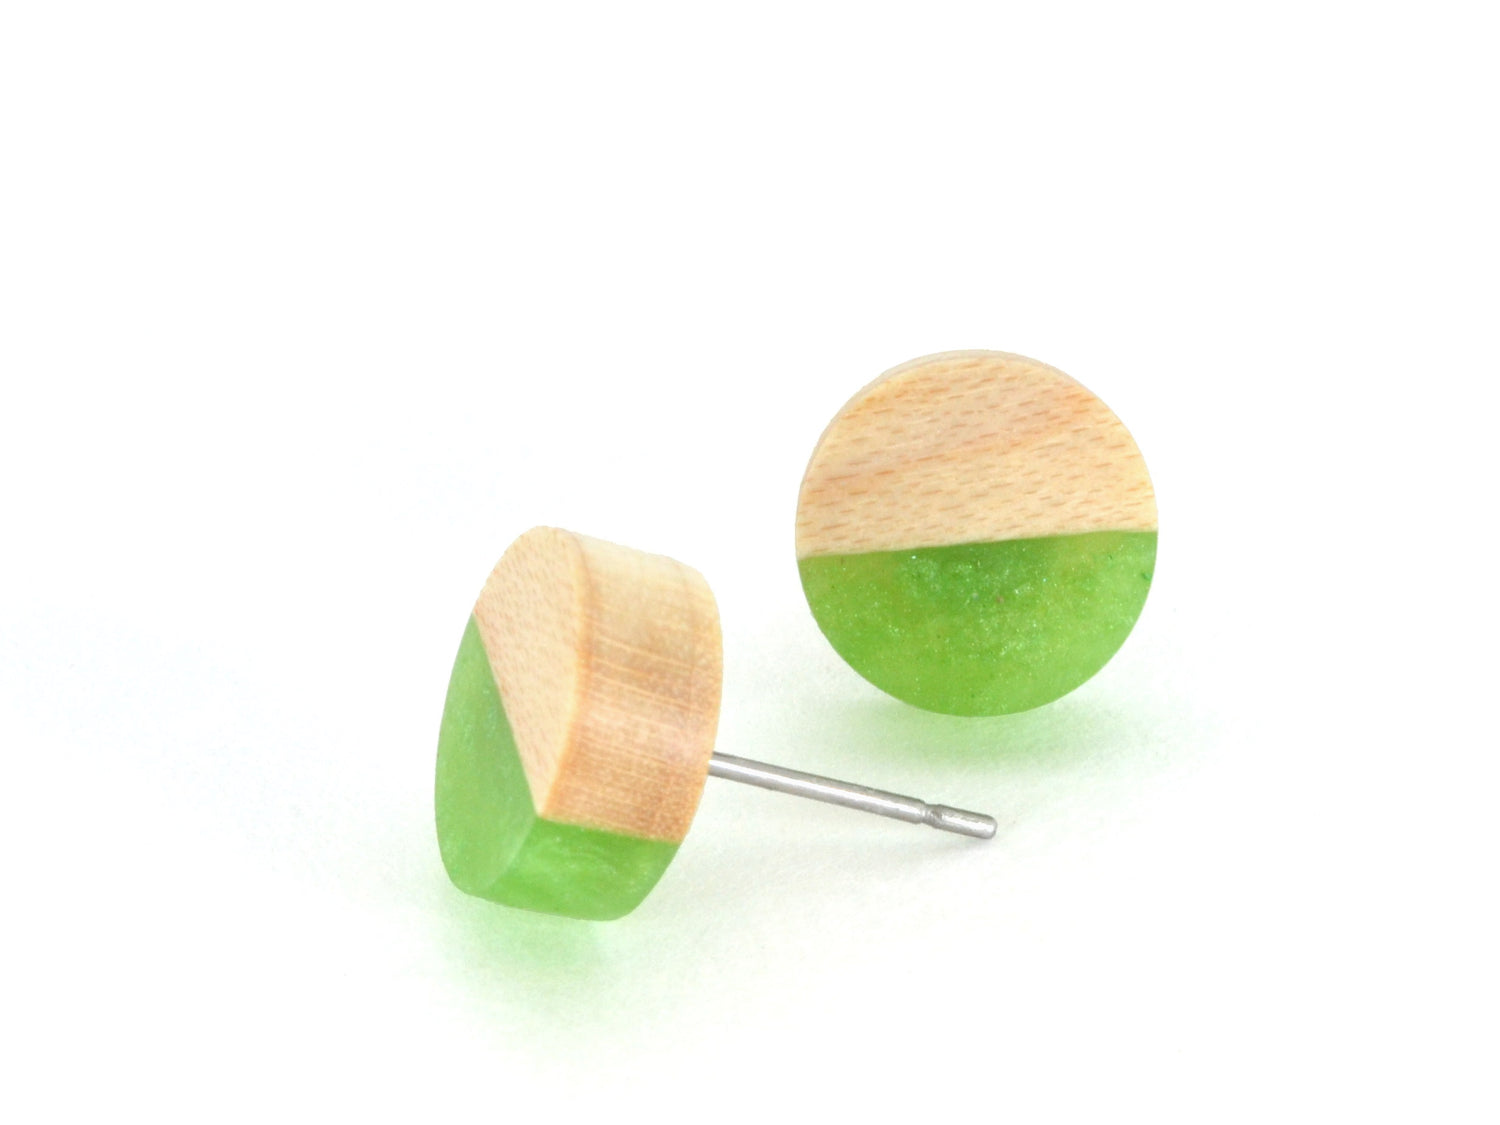 kiwi green earrings, wooden earring stud